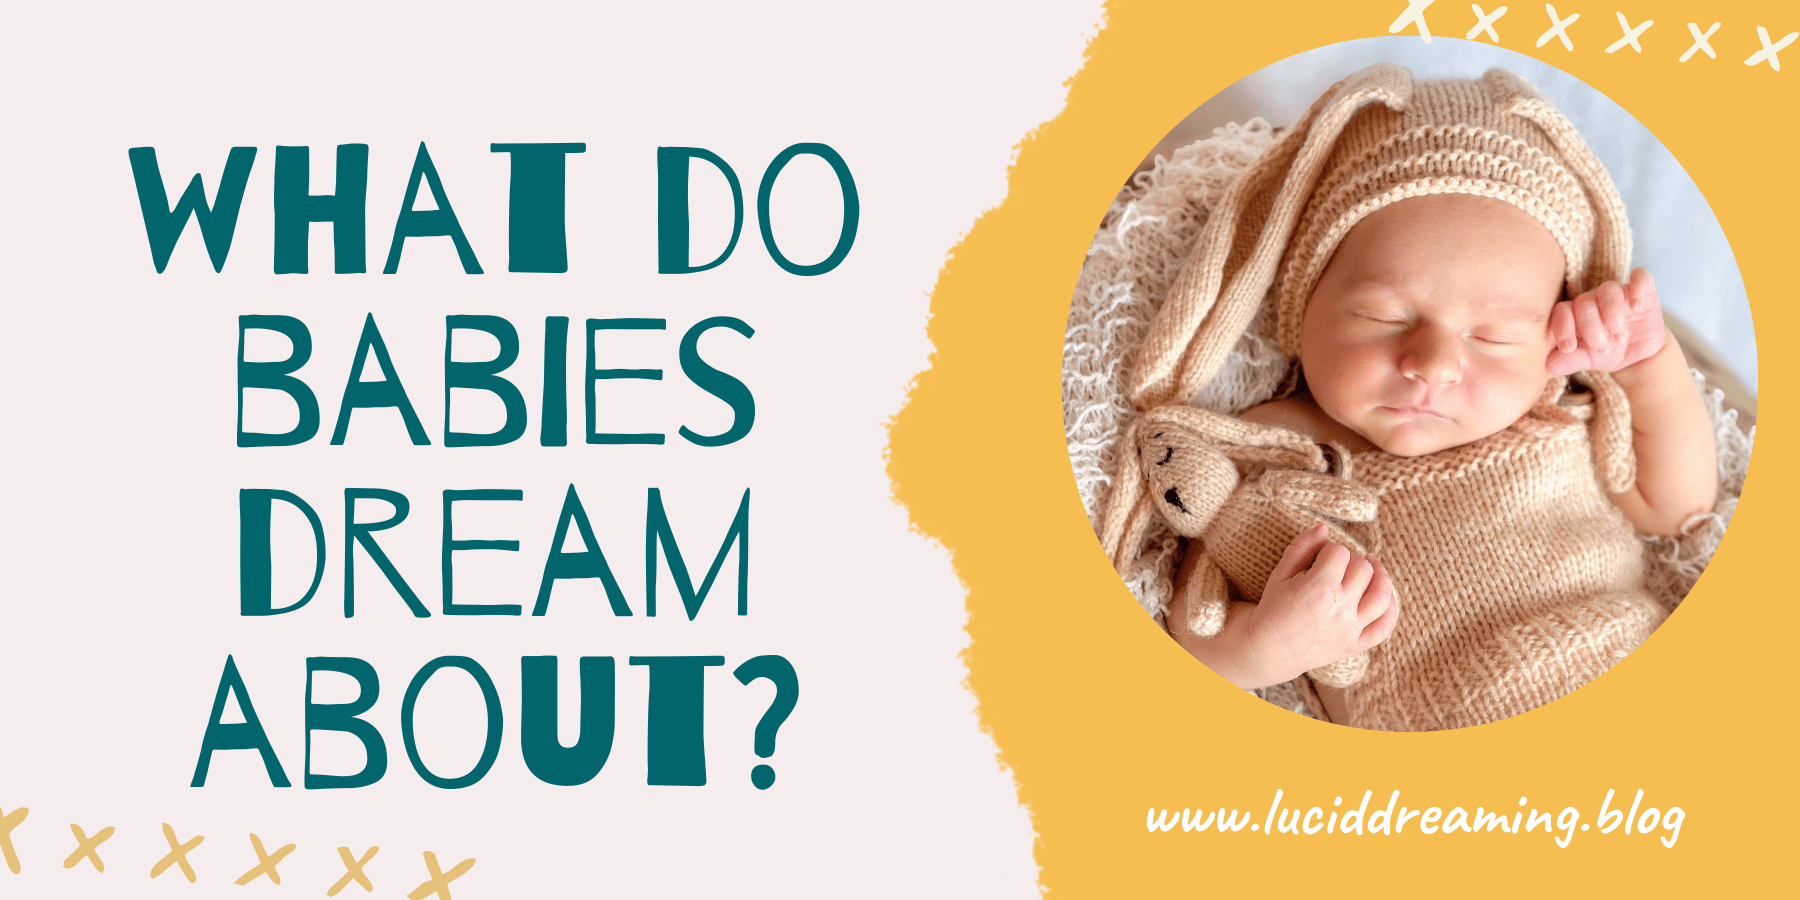 Do babies dream?